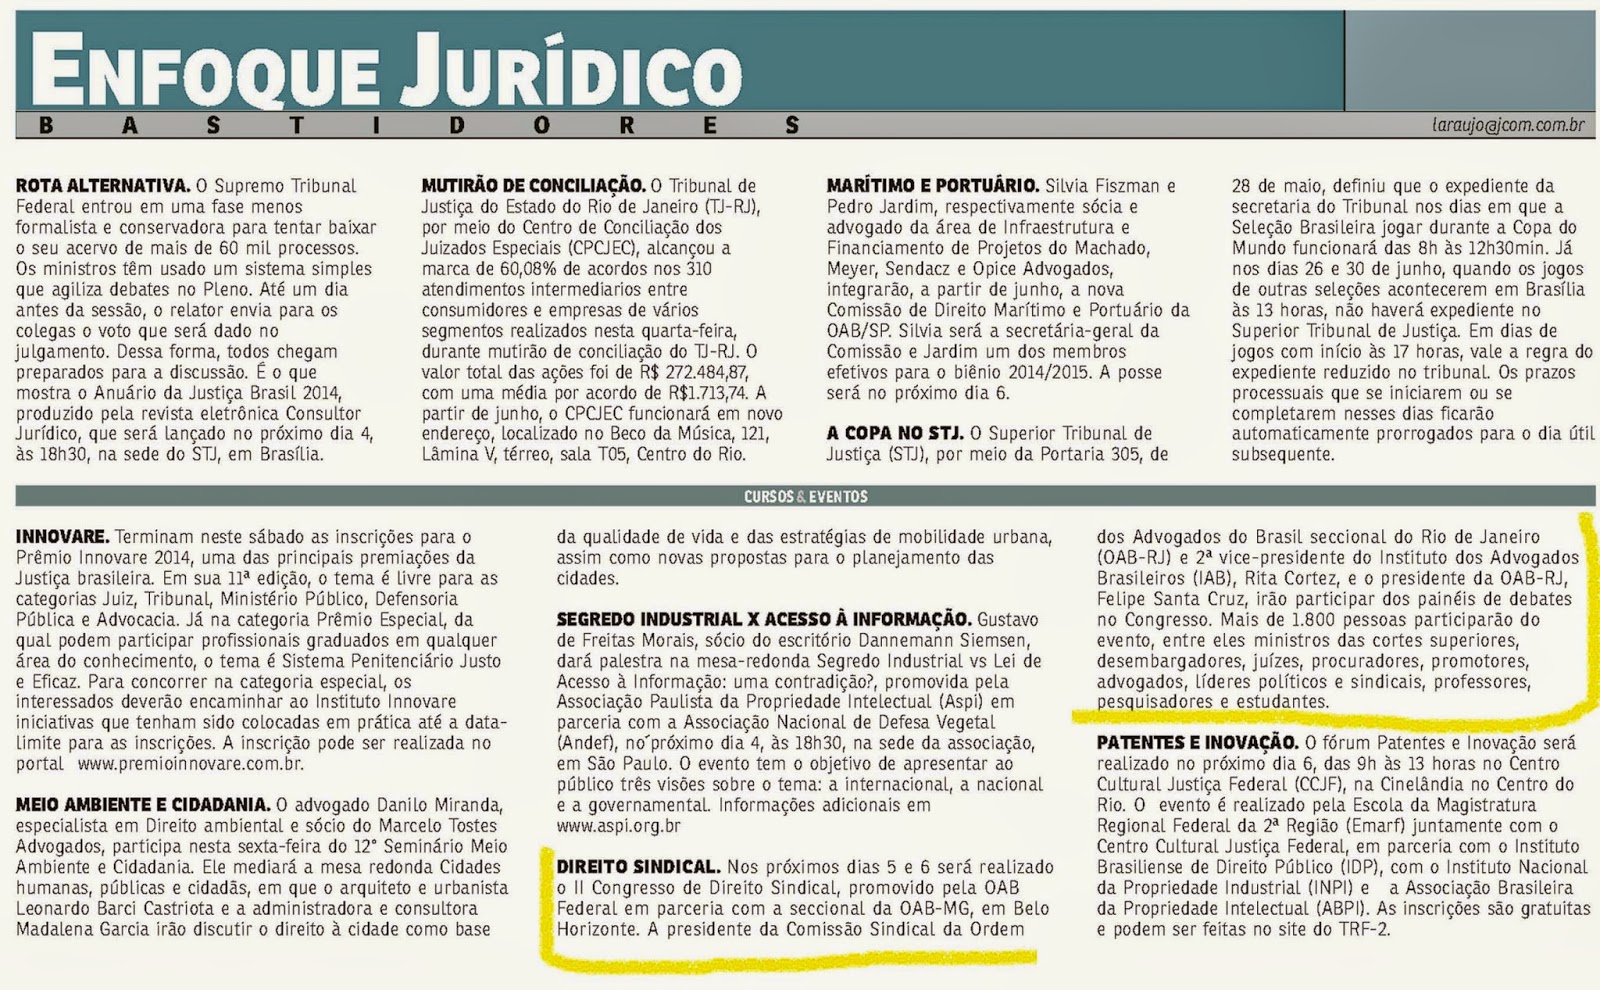 O Jornal do Commércio noticiou a participação de Rita Cortez no “2º Congresso Nacional de Direito Sindical”. Veja!